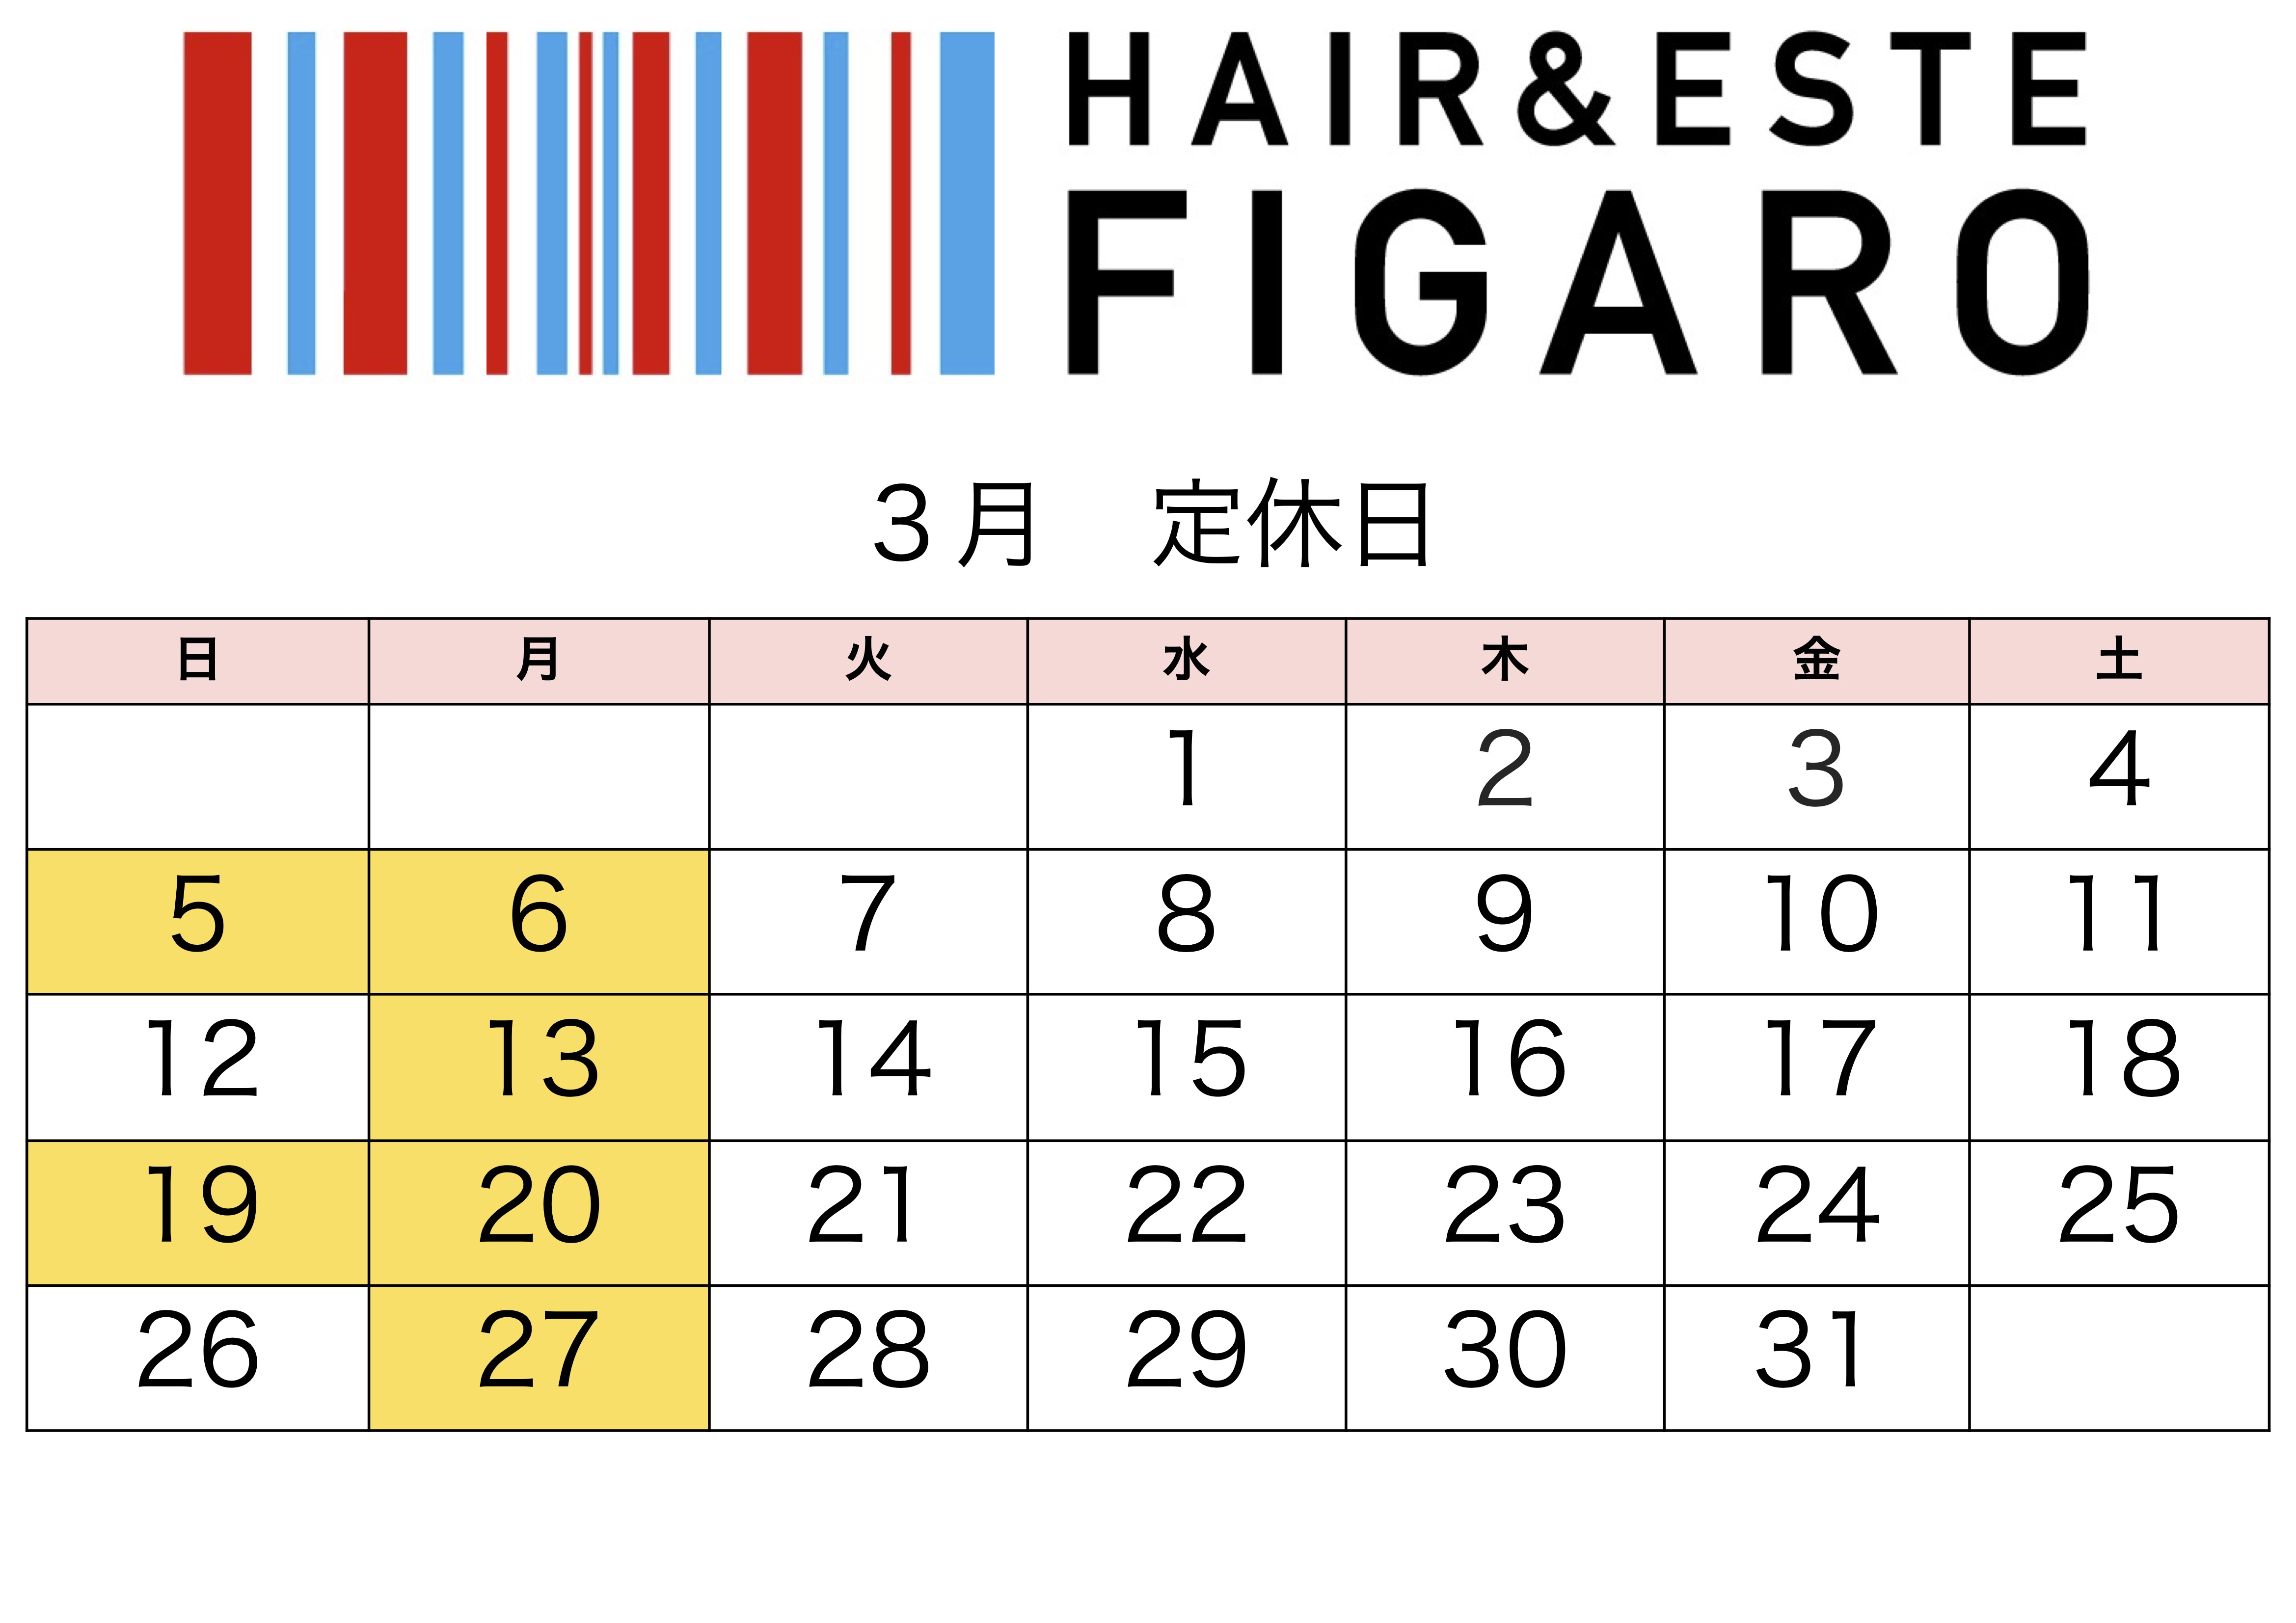 http://figaro-hair.com/blog/%EF%BC%92%EF%BC%90%EF%BC%92%EF%BC%93.%EF%BC%93.jpg